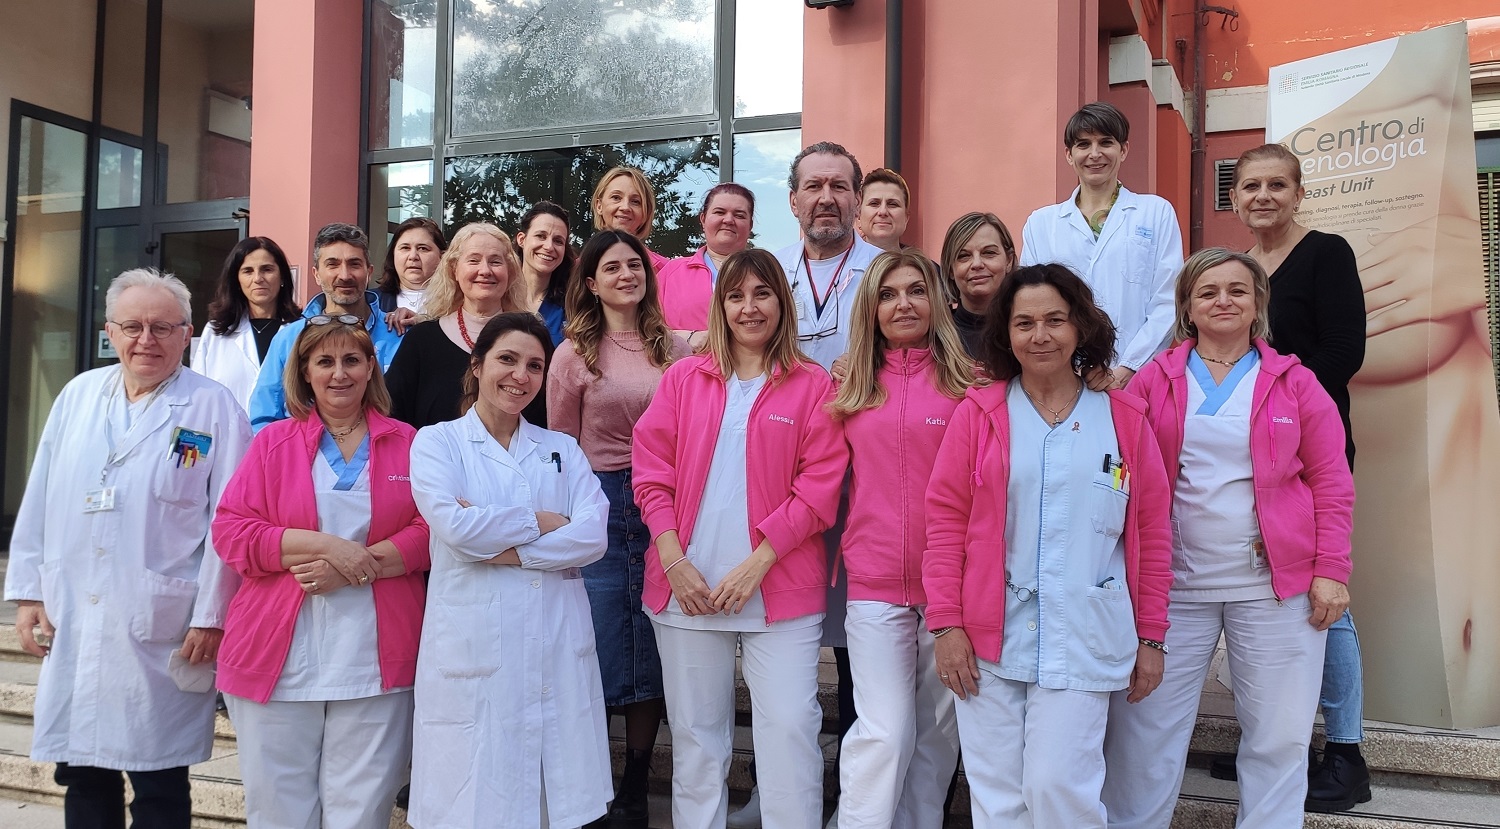 La Breast Unit dell’Ausl con sede a Carpi promossa con lode